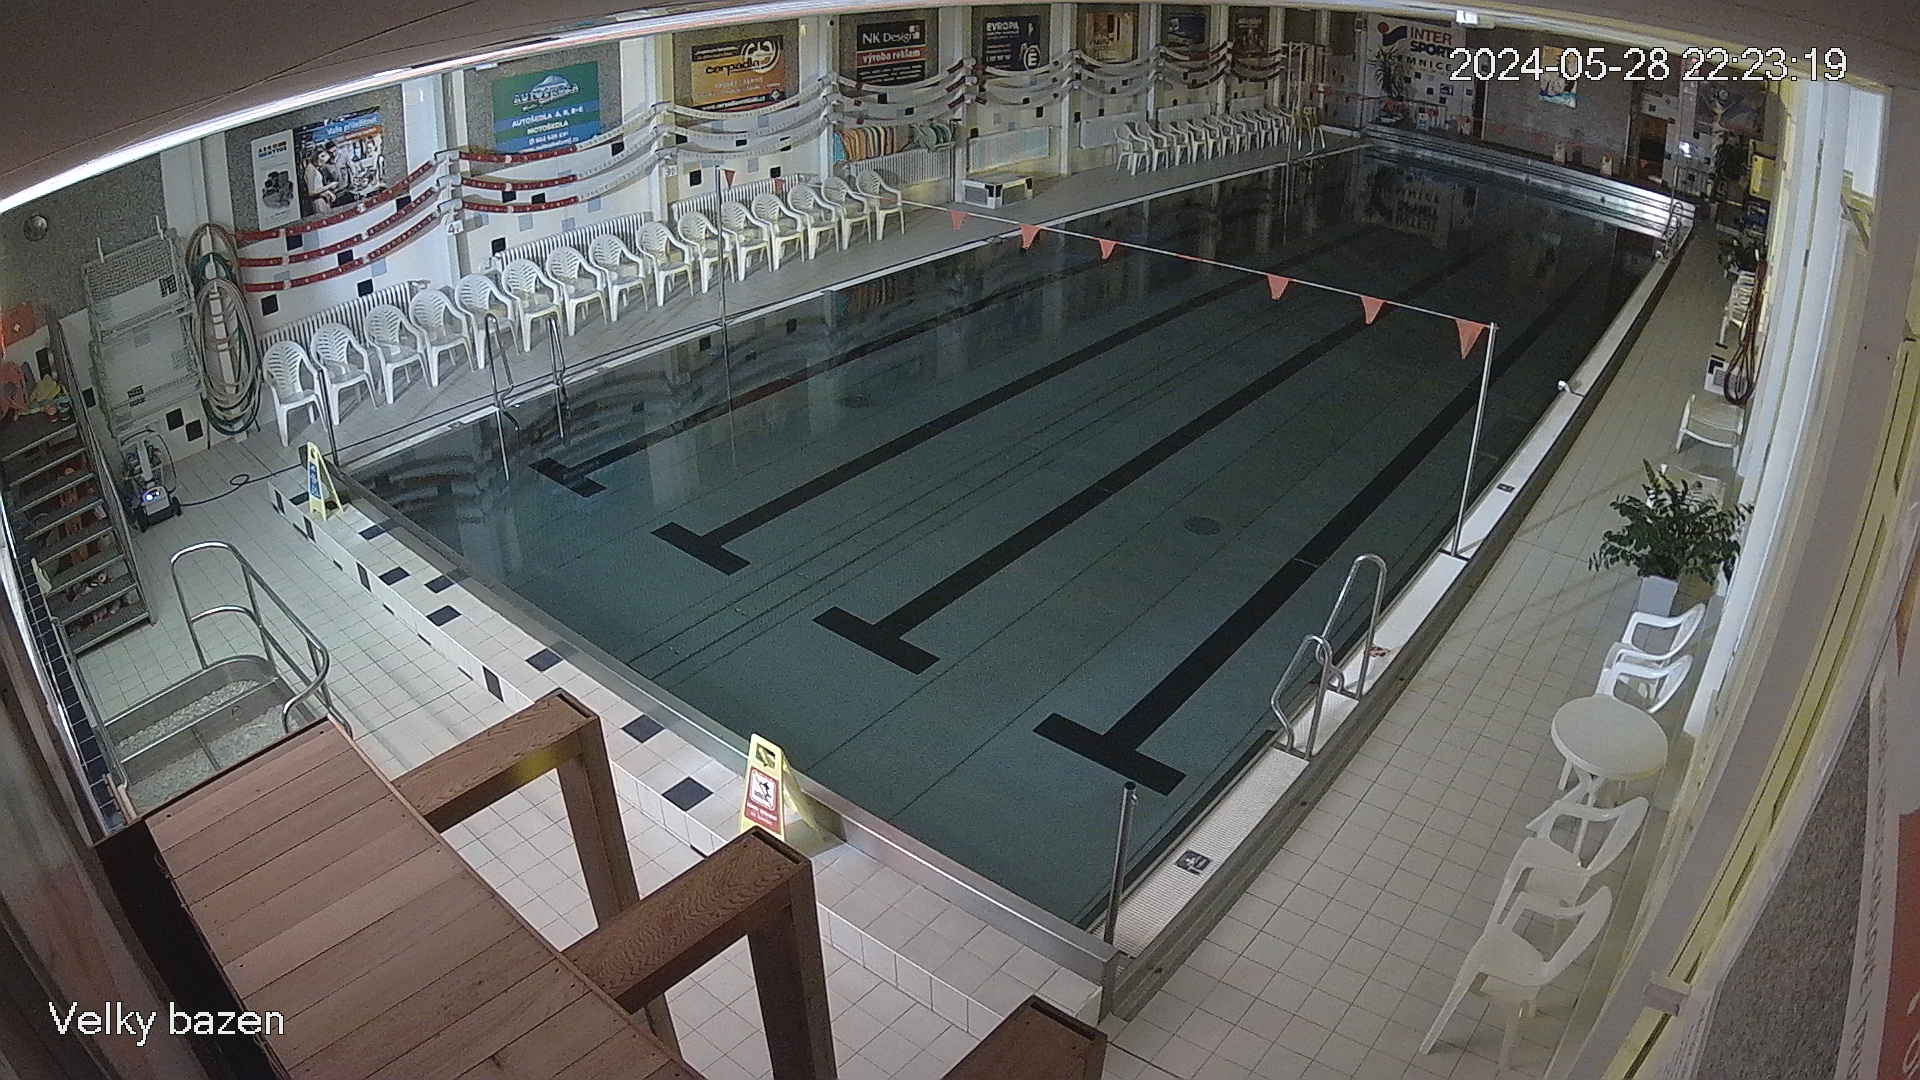 Plavecký bazén, Jilemnice